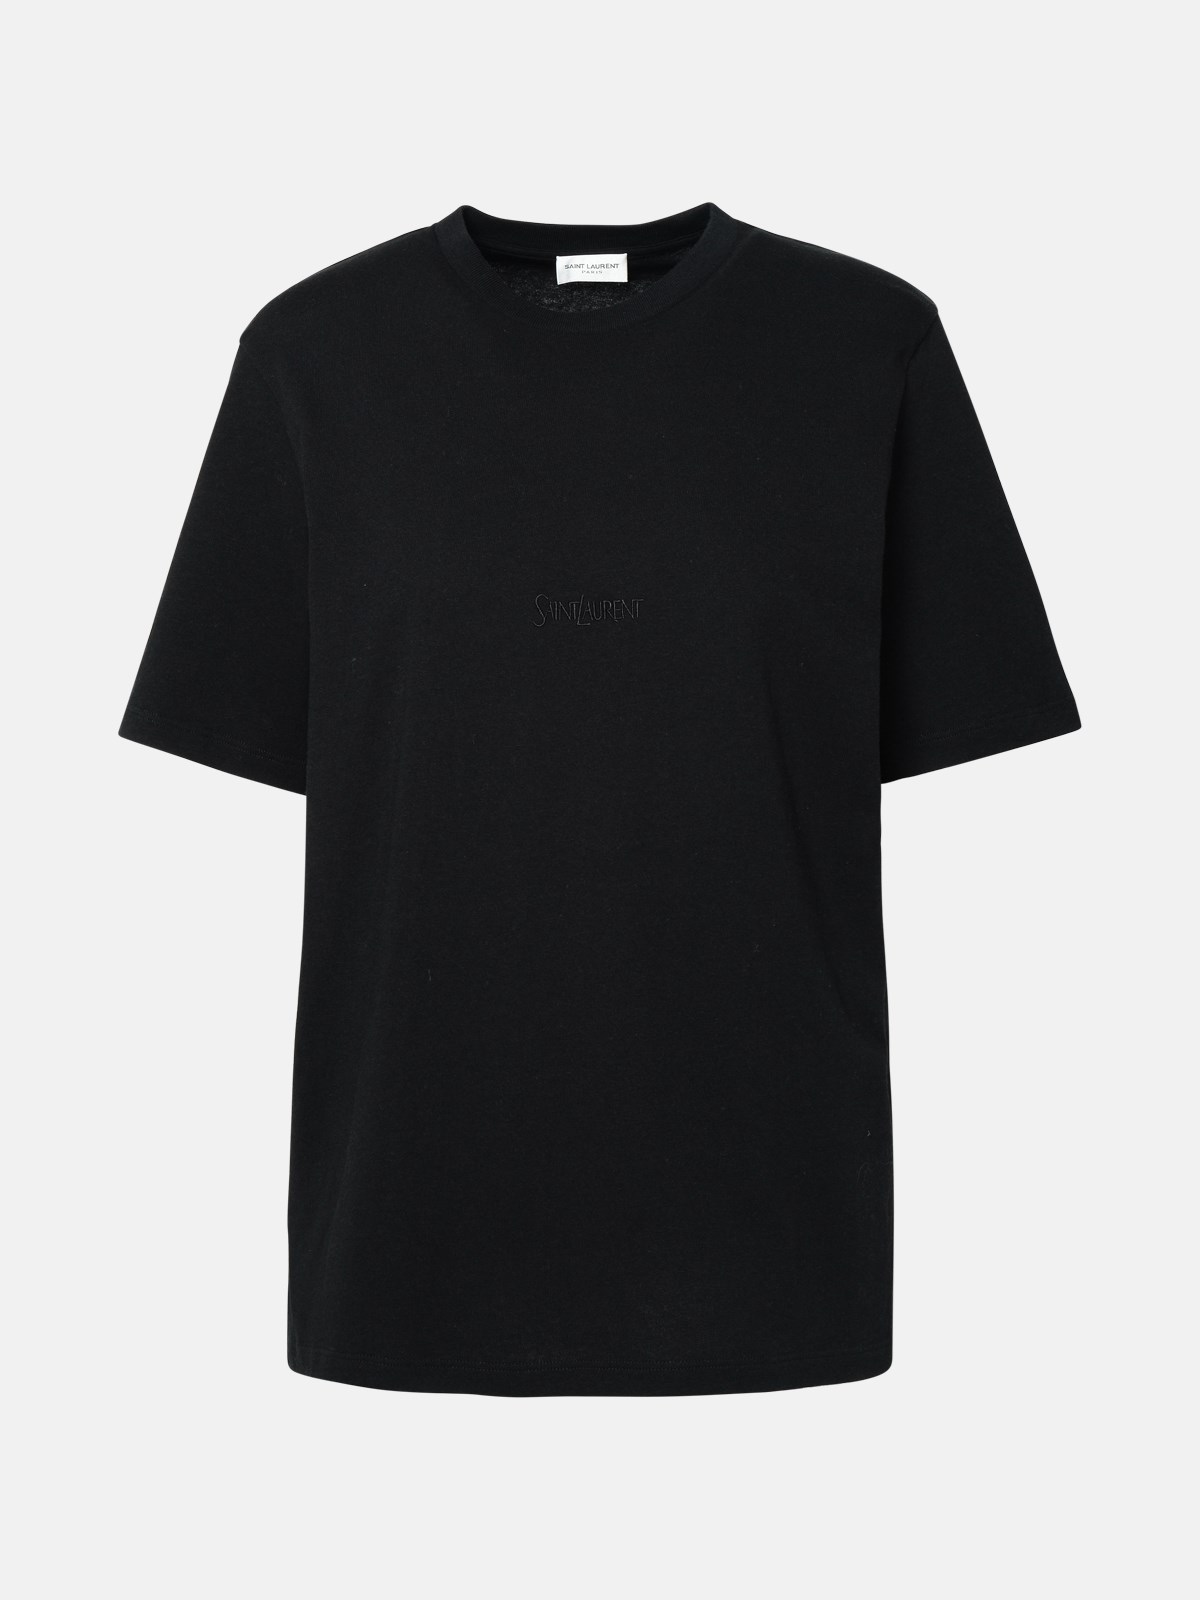 Saint Laurent Black Cotton Boyfriend T-shirt